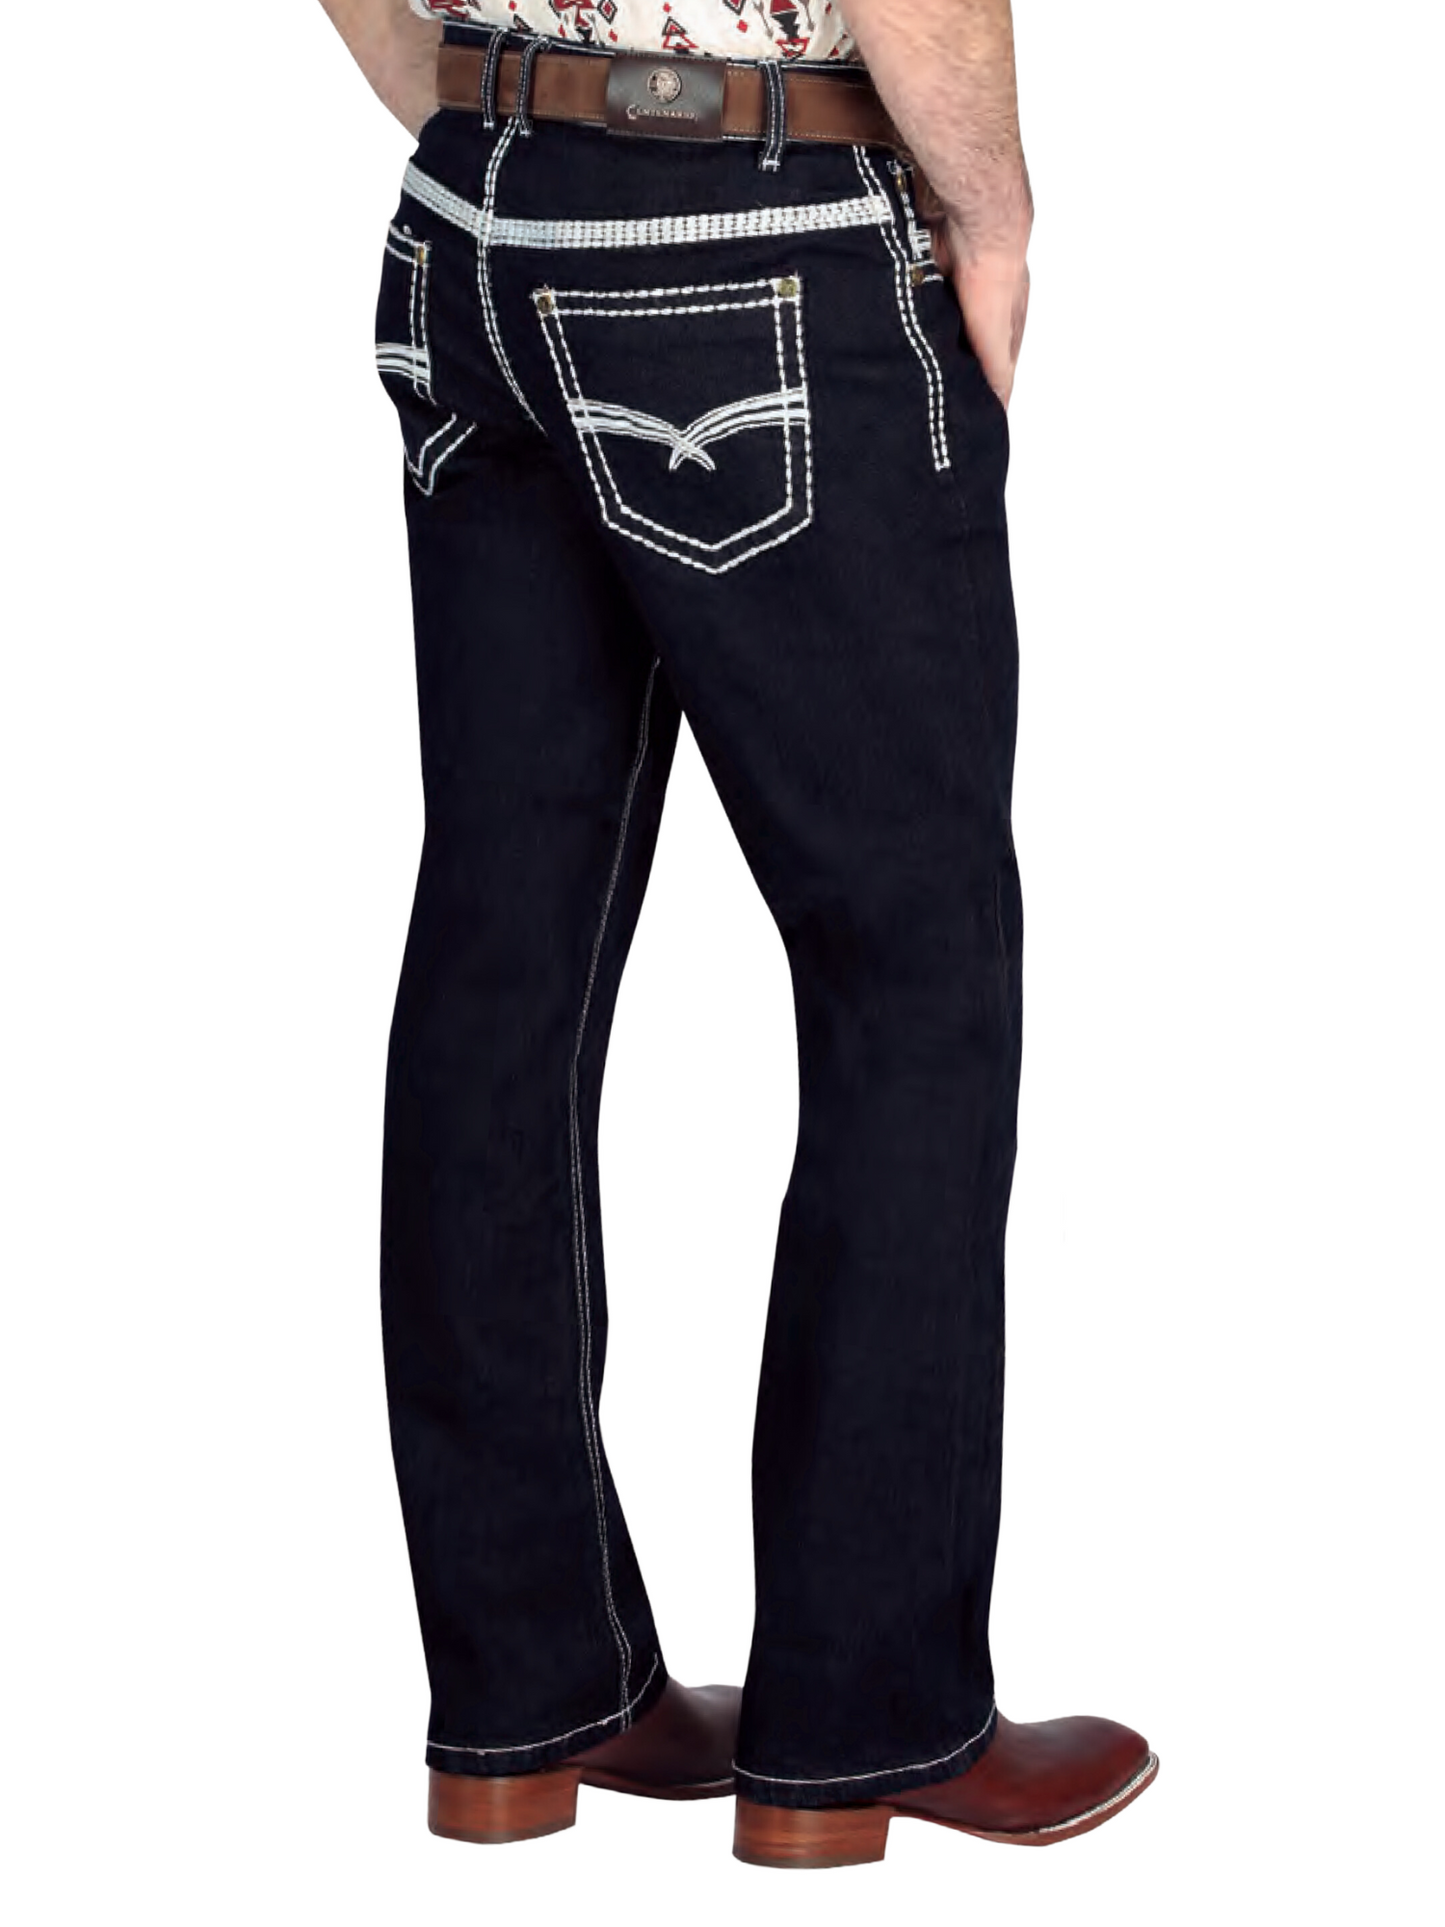 Pantalon Vaquero de Mezclilla Boot Cut Azul Oscuro para Hombre 'Centenario' - ID: 44844 Denim Jeans Centenario 